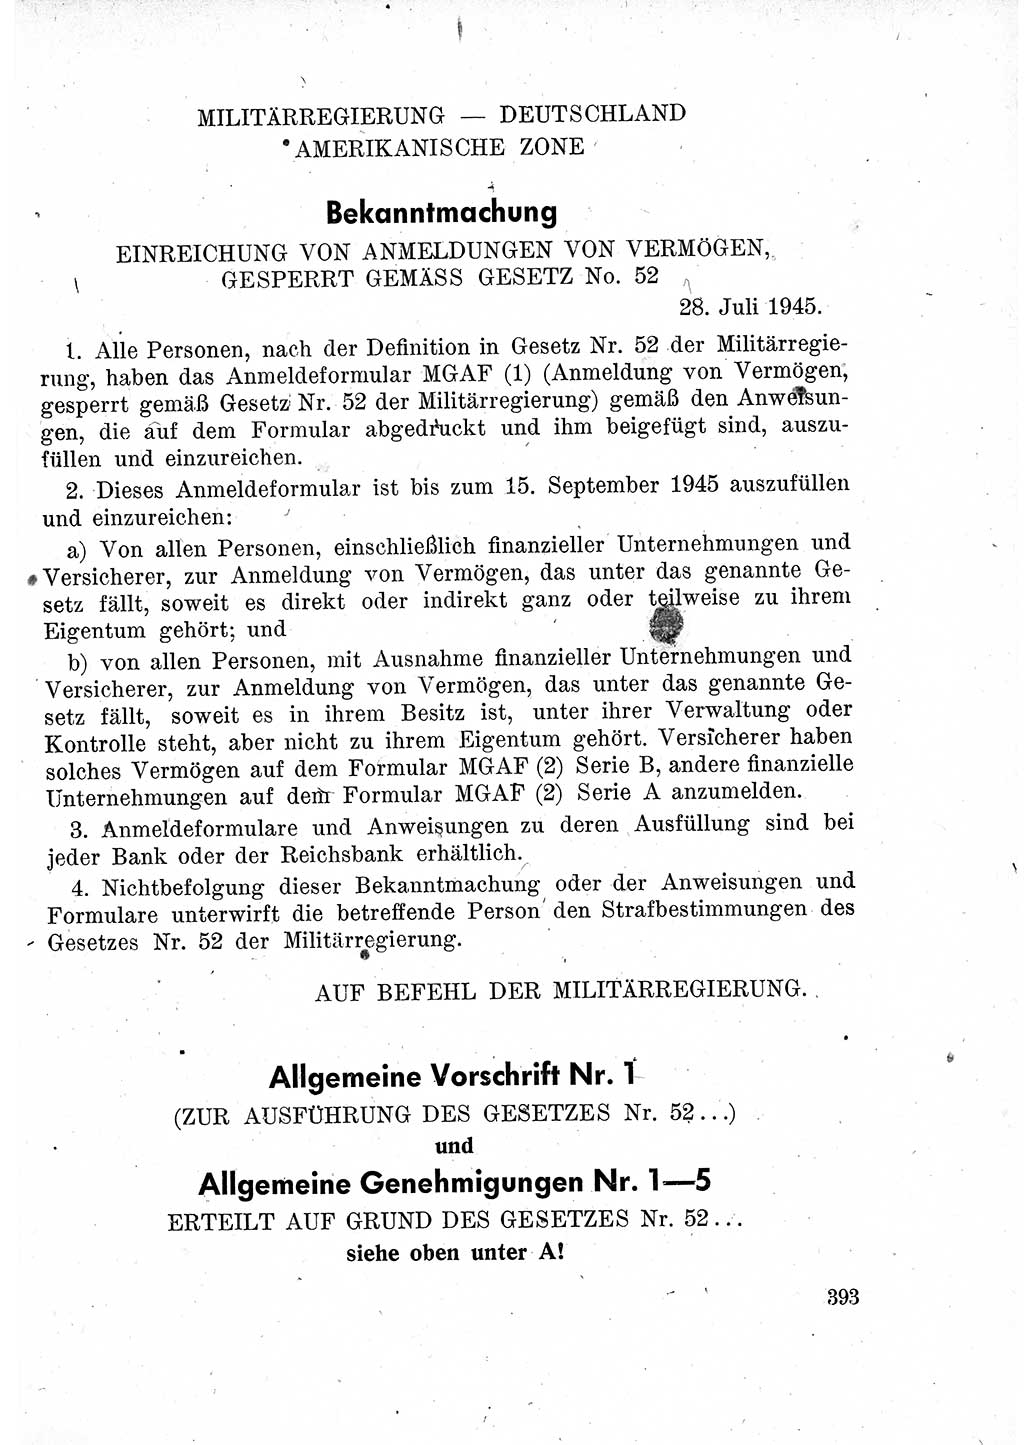 Das Recht der Besatzungsmacht (Deutschland), Proklamationen, Deklerationen, Verordnungen, Gesetze und Bekanntmachungen 1947, Seite 393 (R. Bes. Dtl. 1947, S. 393)